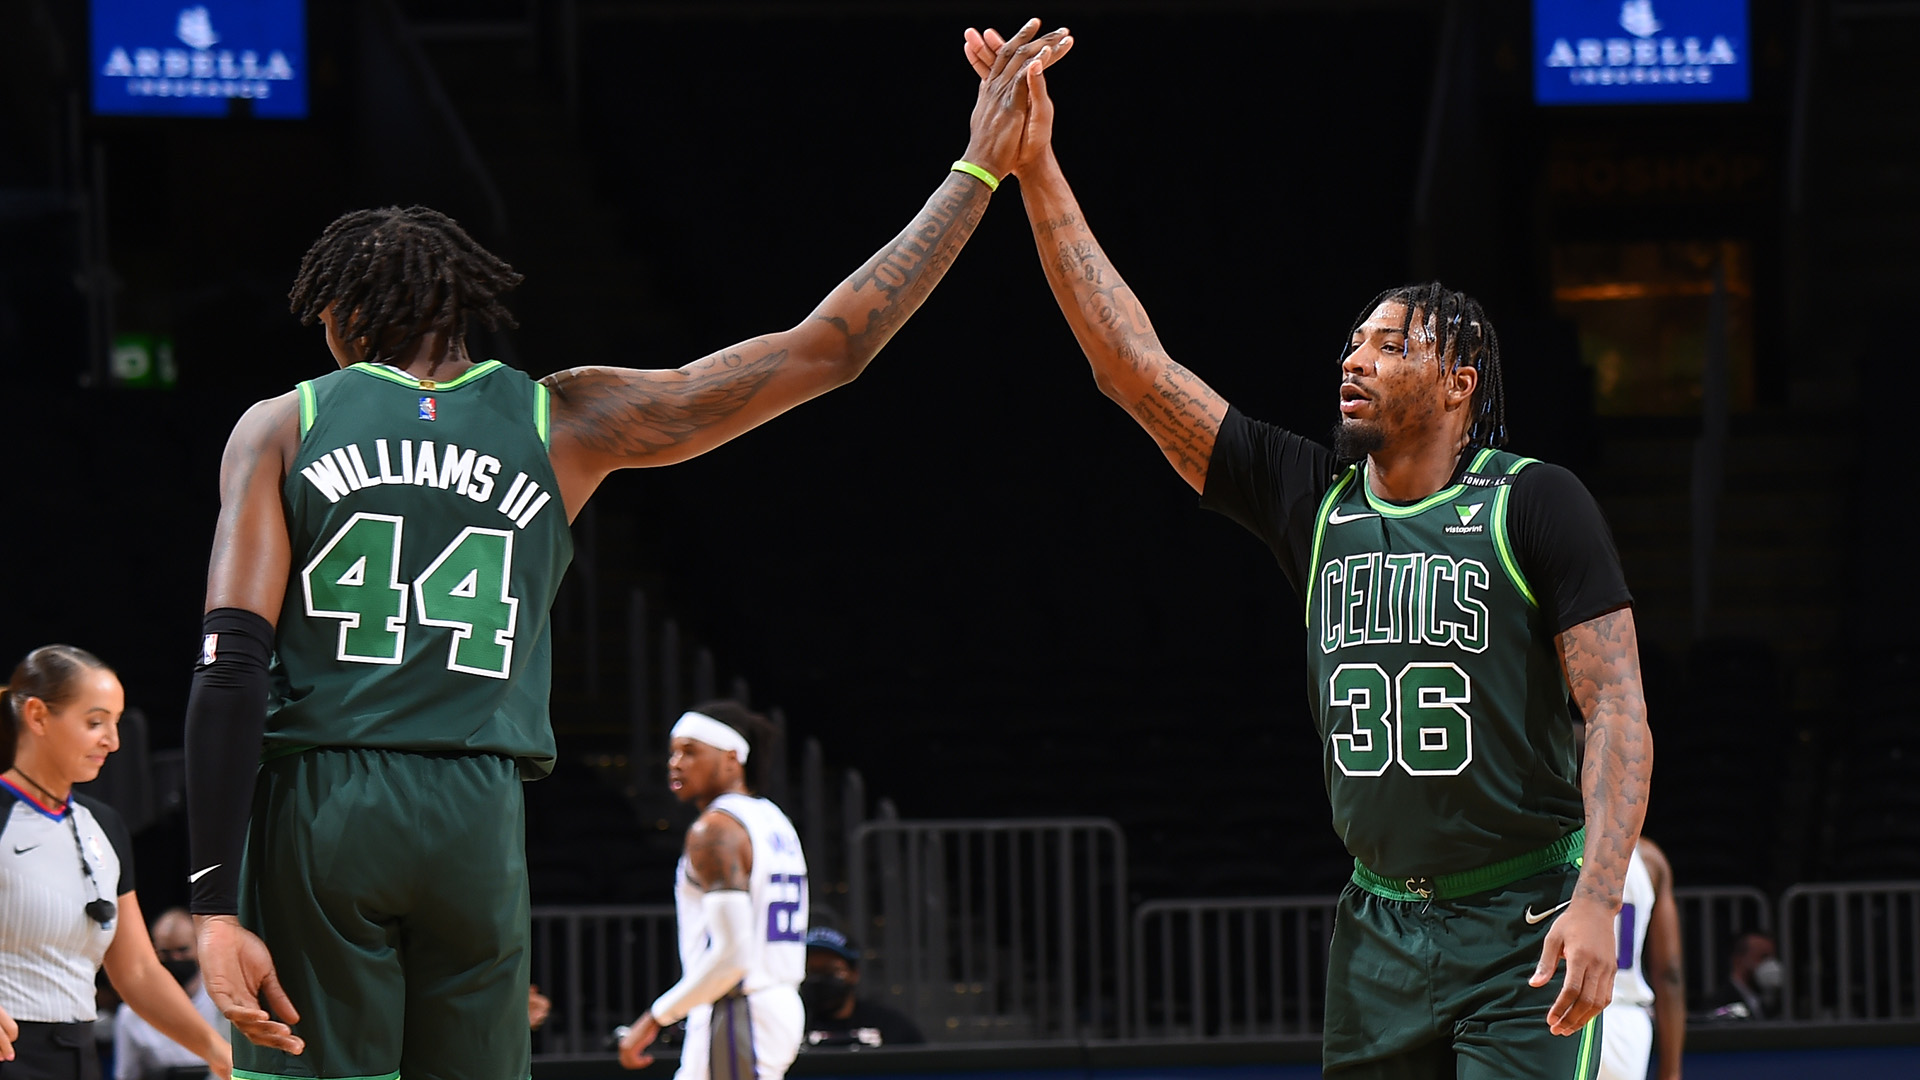 Robert Williams III's Game 3 defensive effort in Celtics win